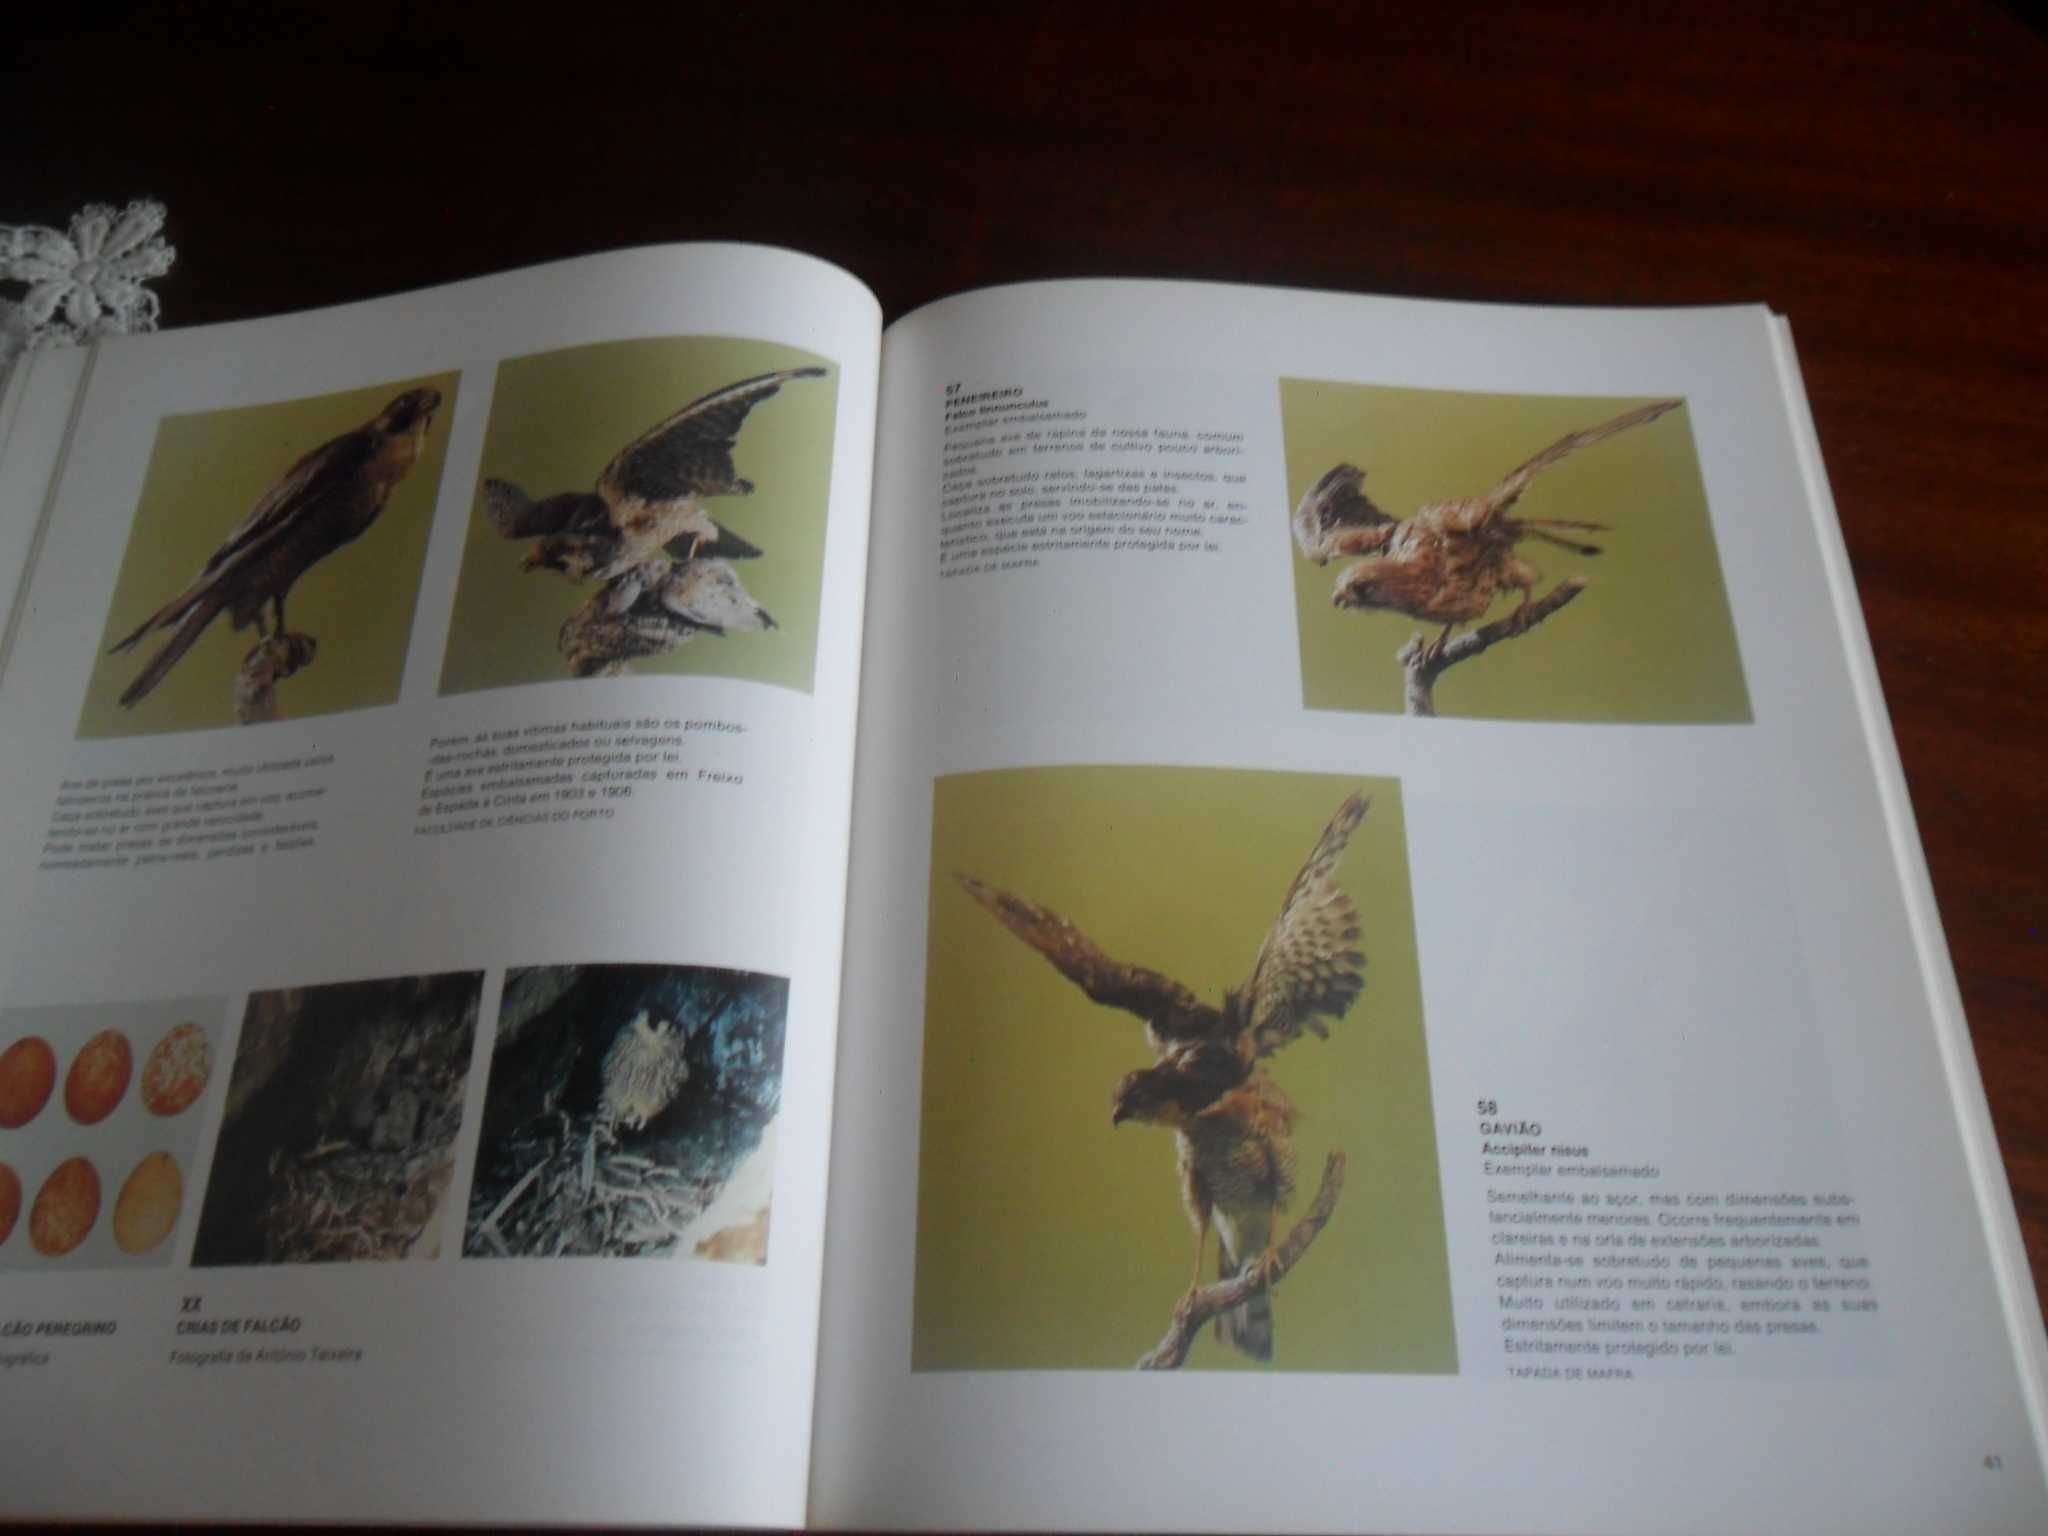 "Falcoaria Real" Catálogo de Exposição - 1ª Edição de 1990